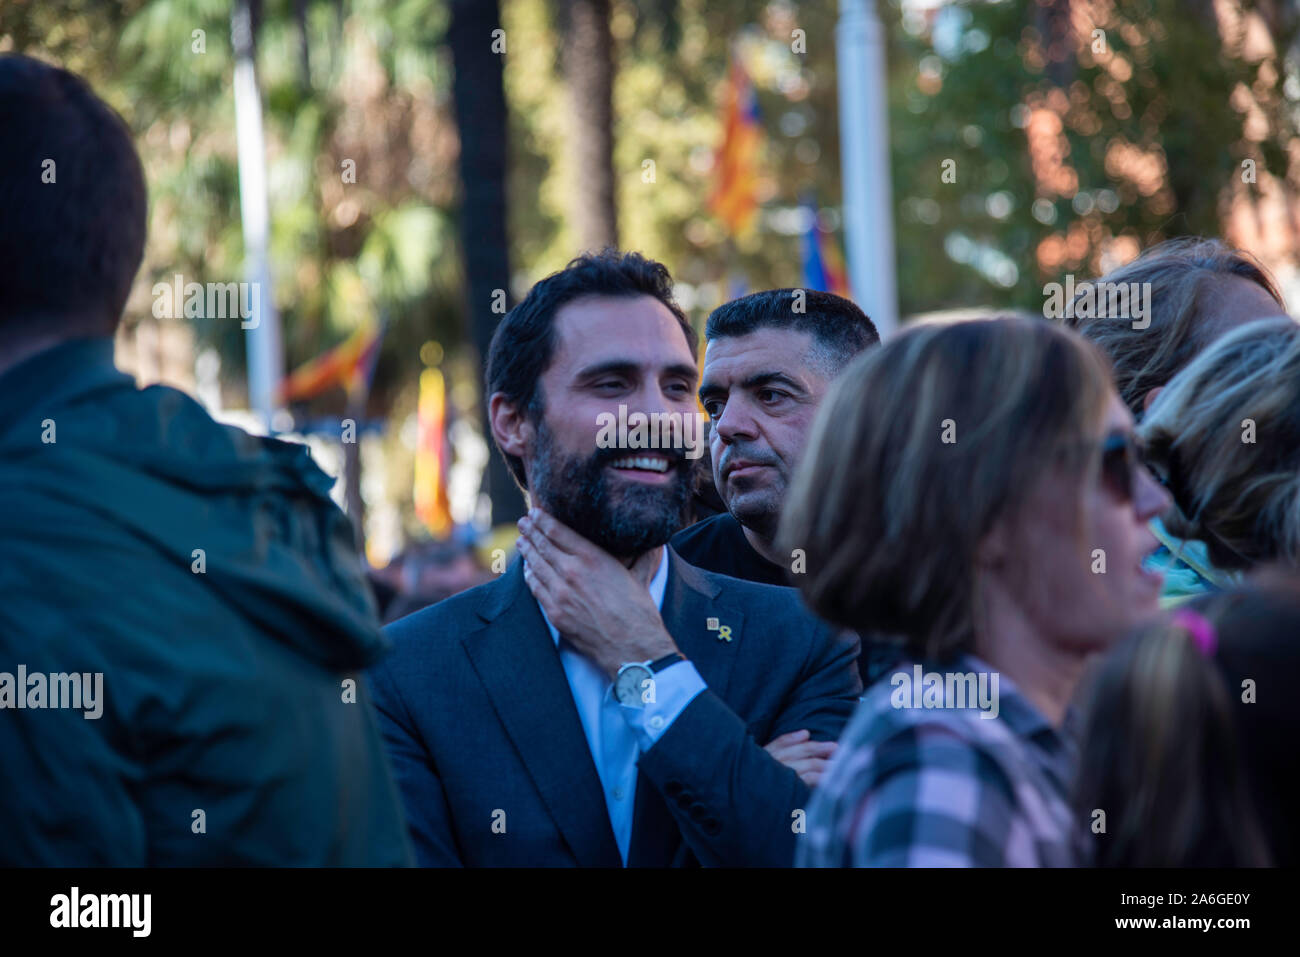 Barcelona Cataluña el dia 26 de octubre 2019 la asociaciones separatista  se manifiesta en Barcelona con el lema libertad políticos presos  BCN 2019 Stock Photo